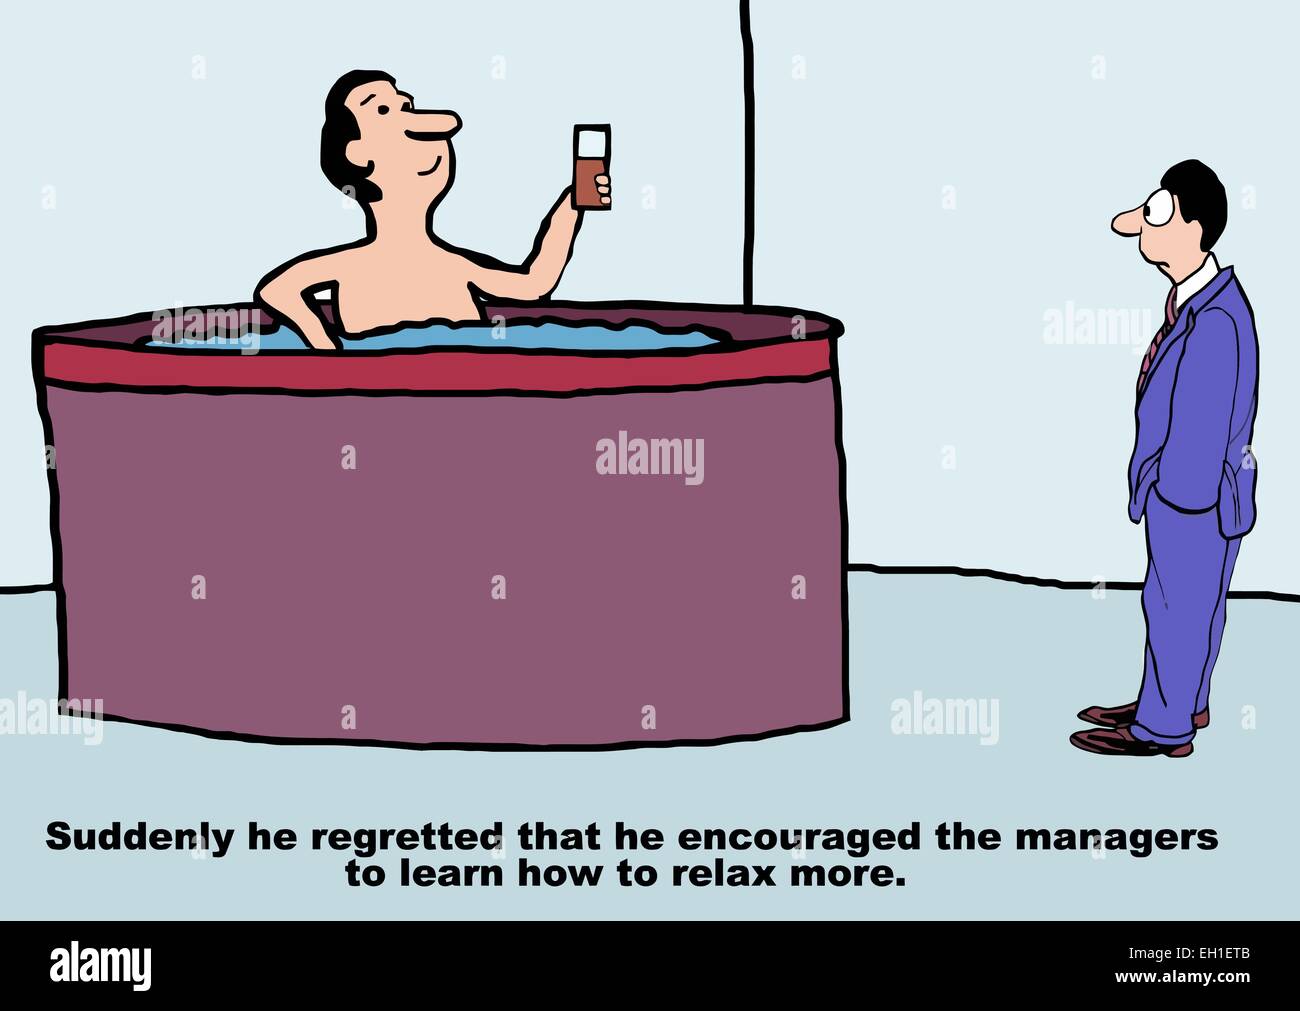 Cartoon di business manager nella vasca calda. Il boss di Business pensa: improvvisamente ha deplorato... stimolare... mangiatoie... più relax. Illustrazione Vettoriale